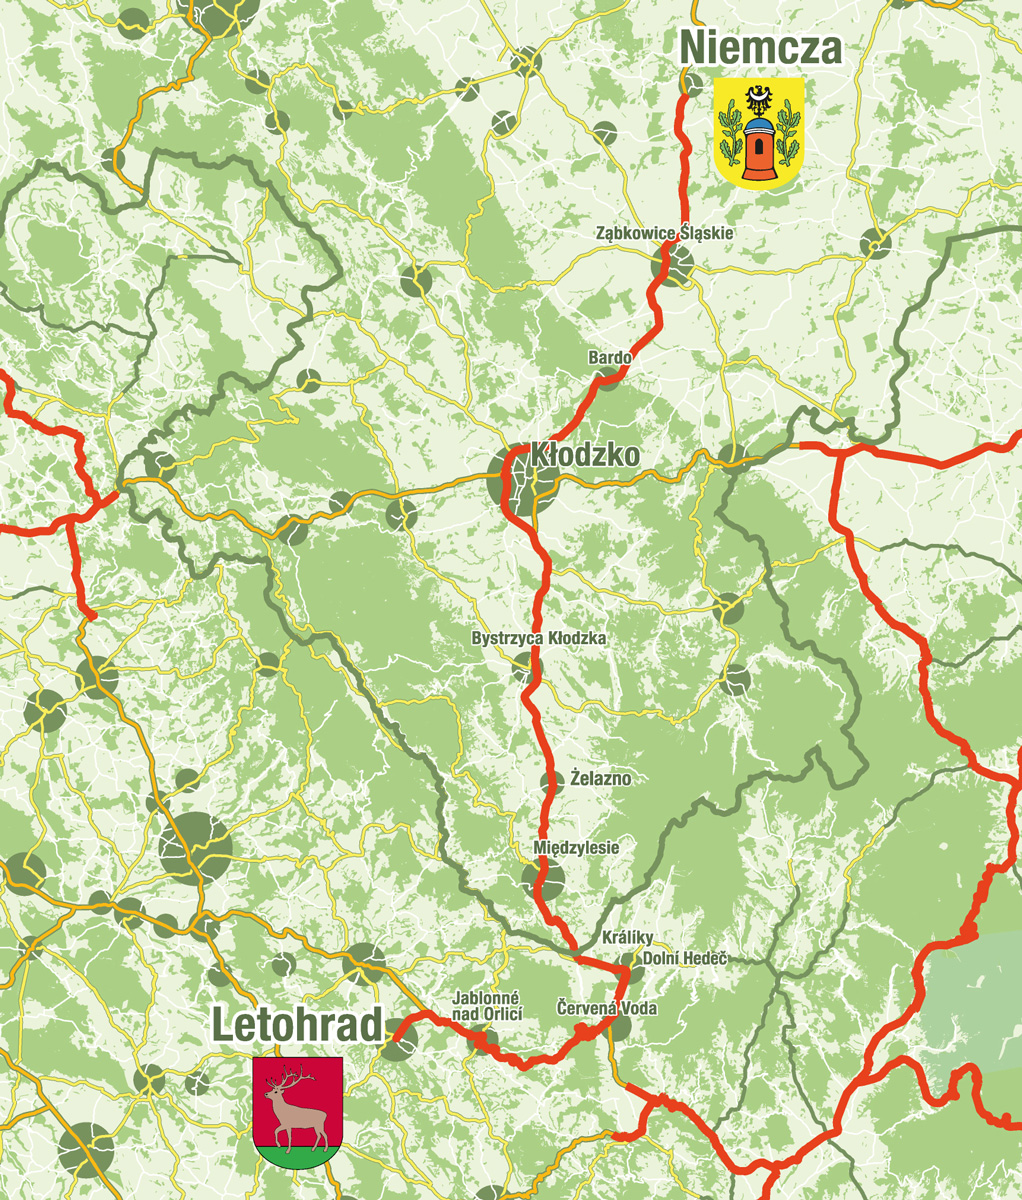 Mapa_NIemcza_web